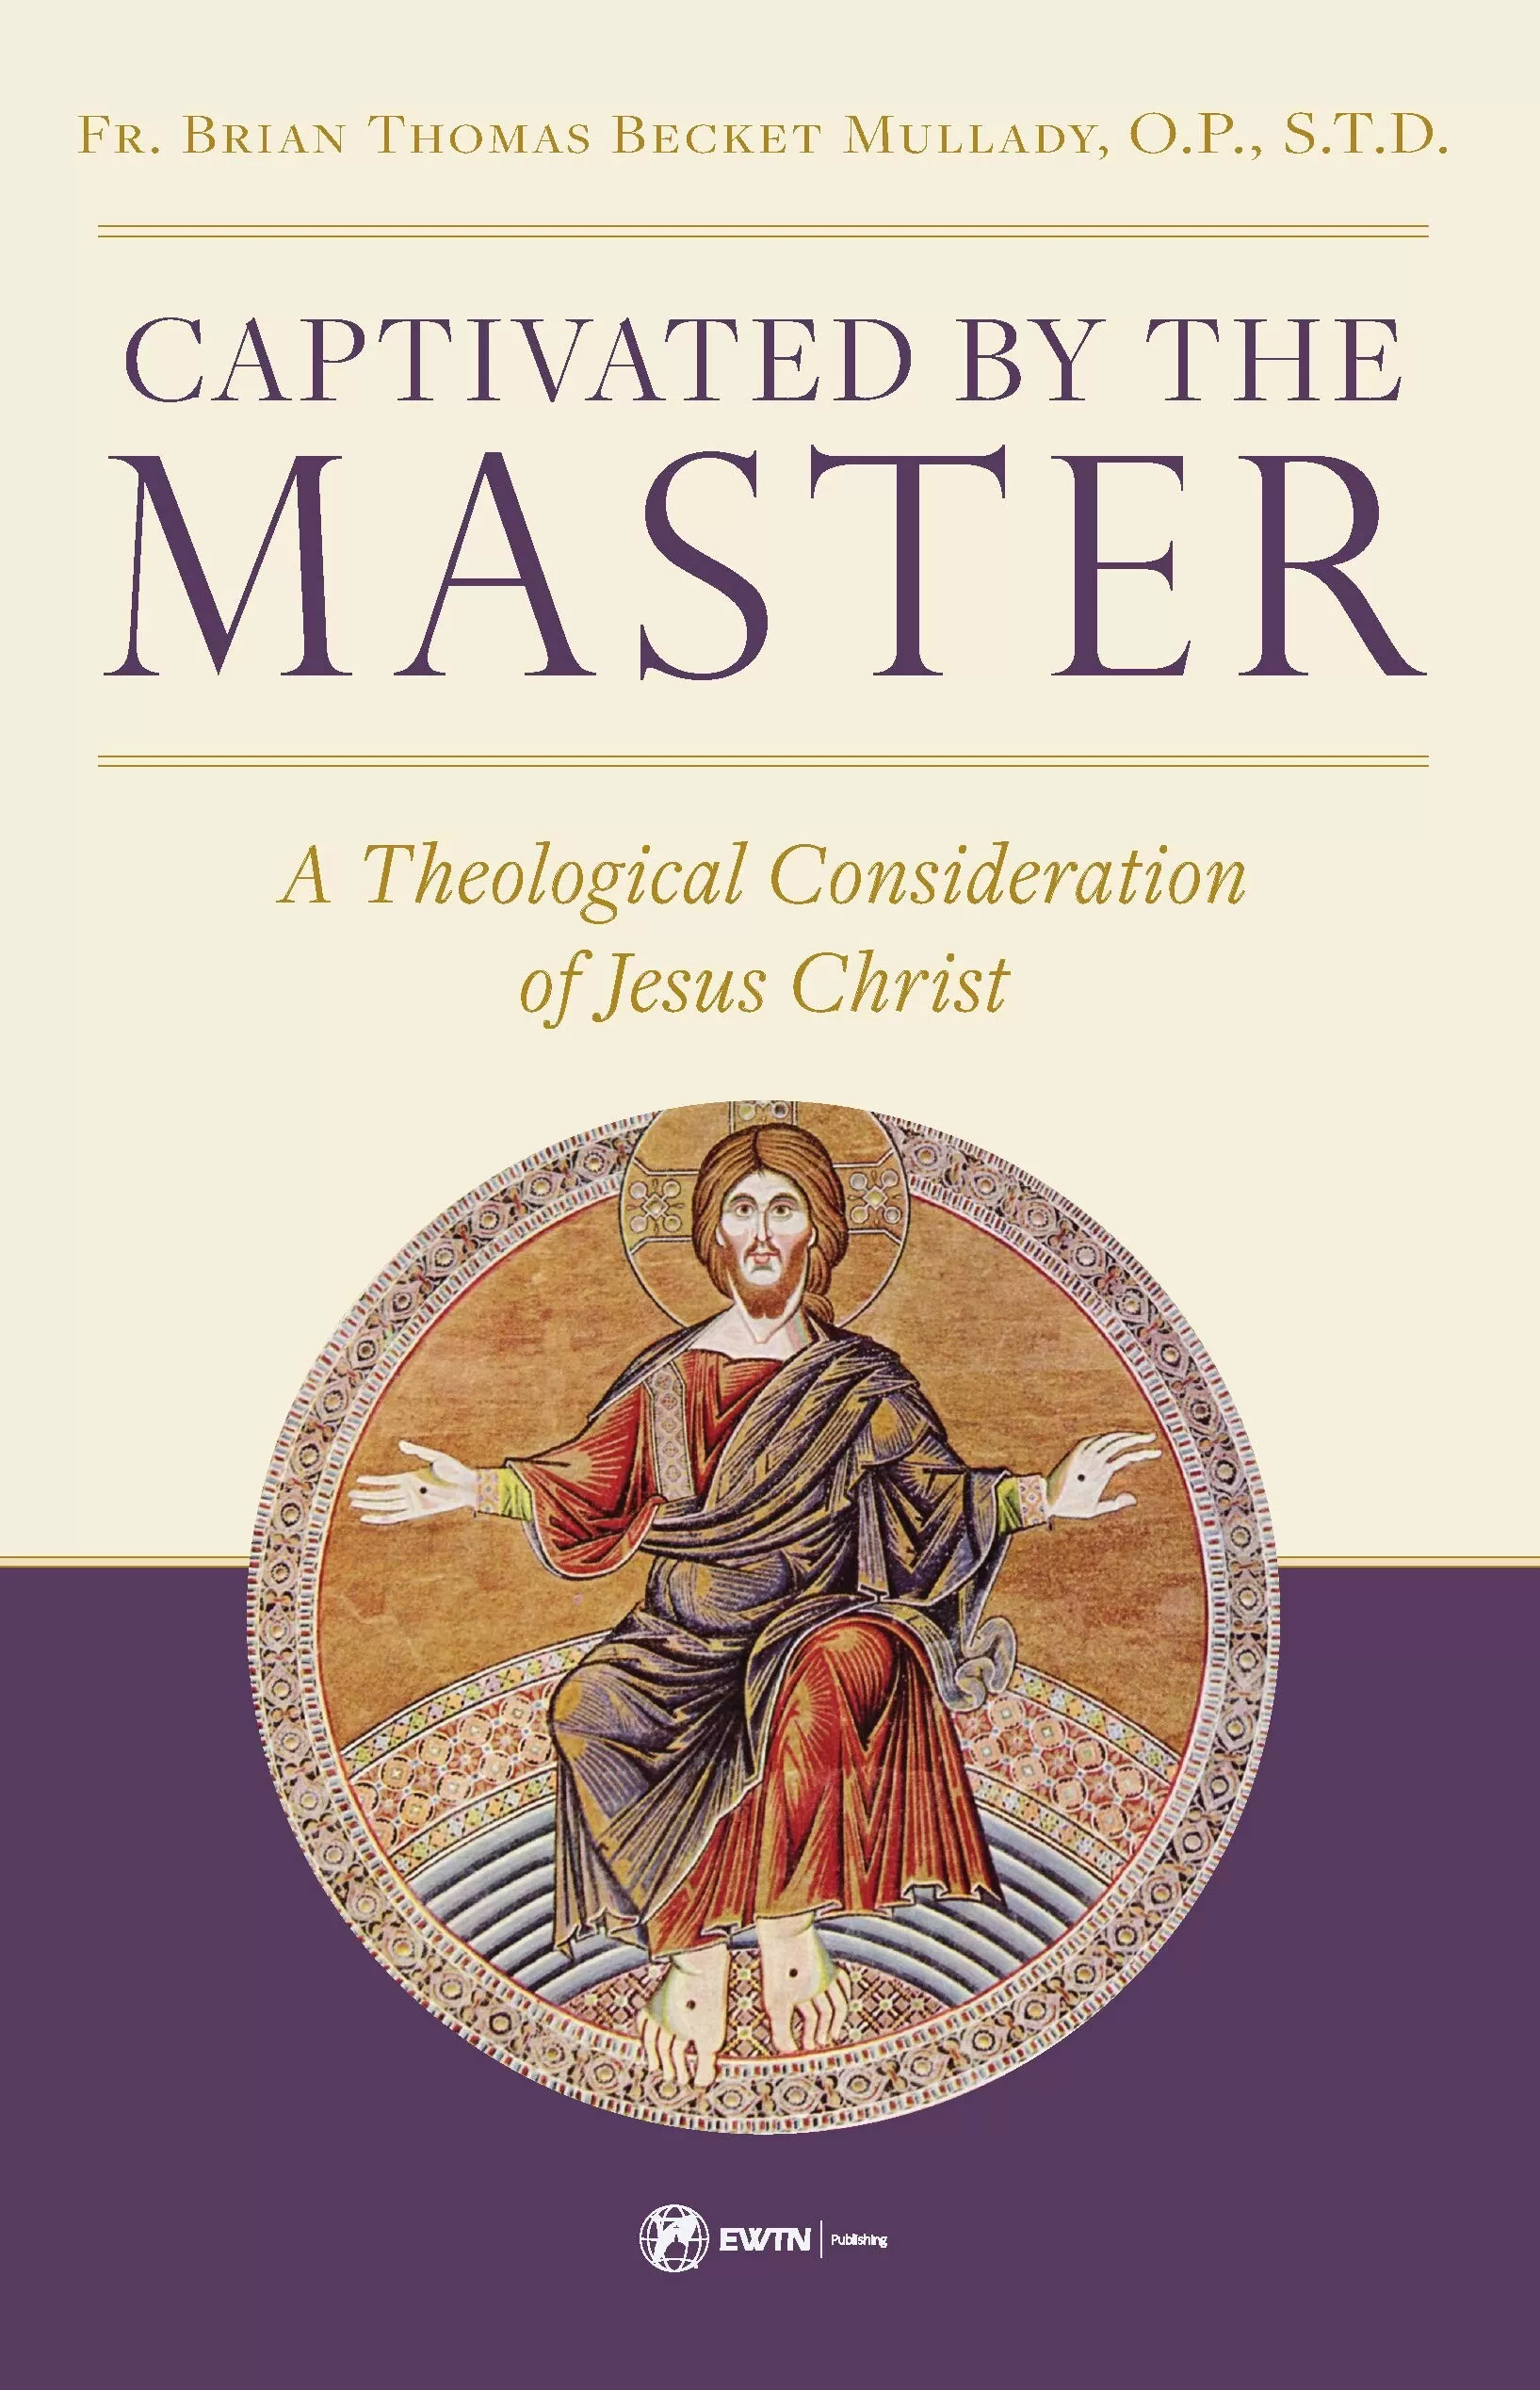 Affascinato dal Maestro: una considerazione teologica di Gesù Cristo